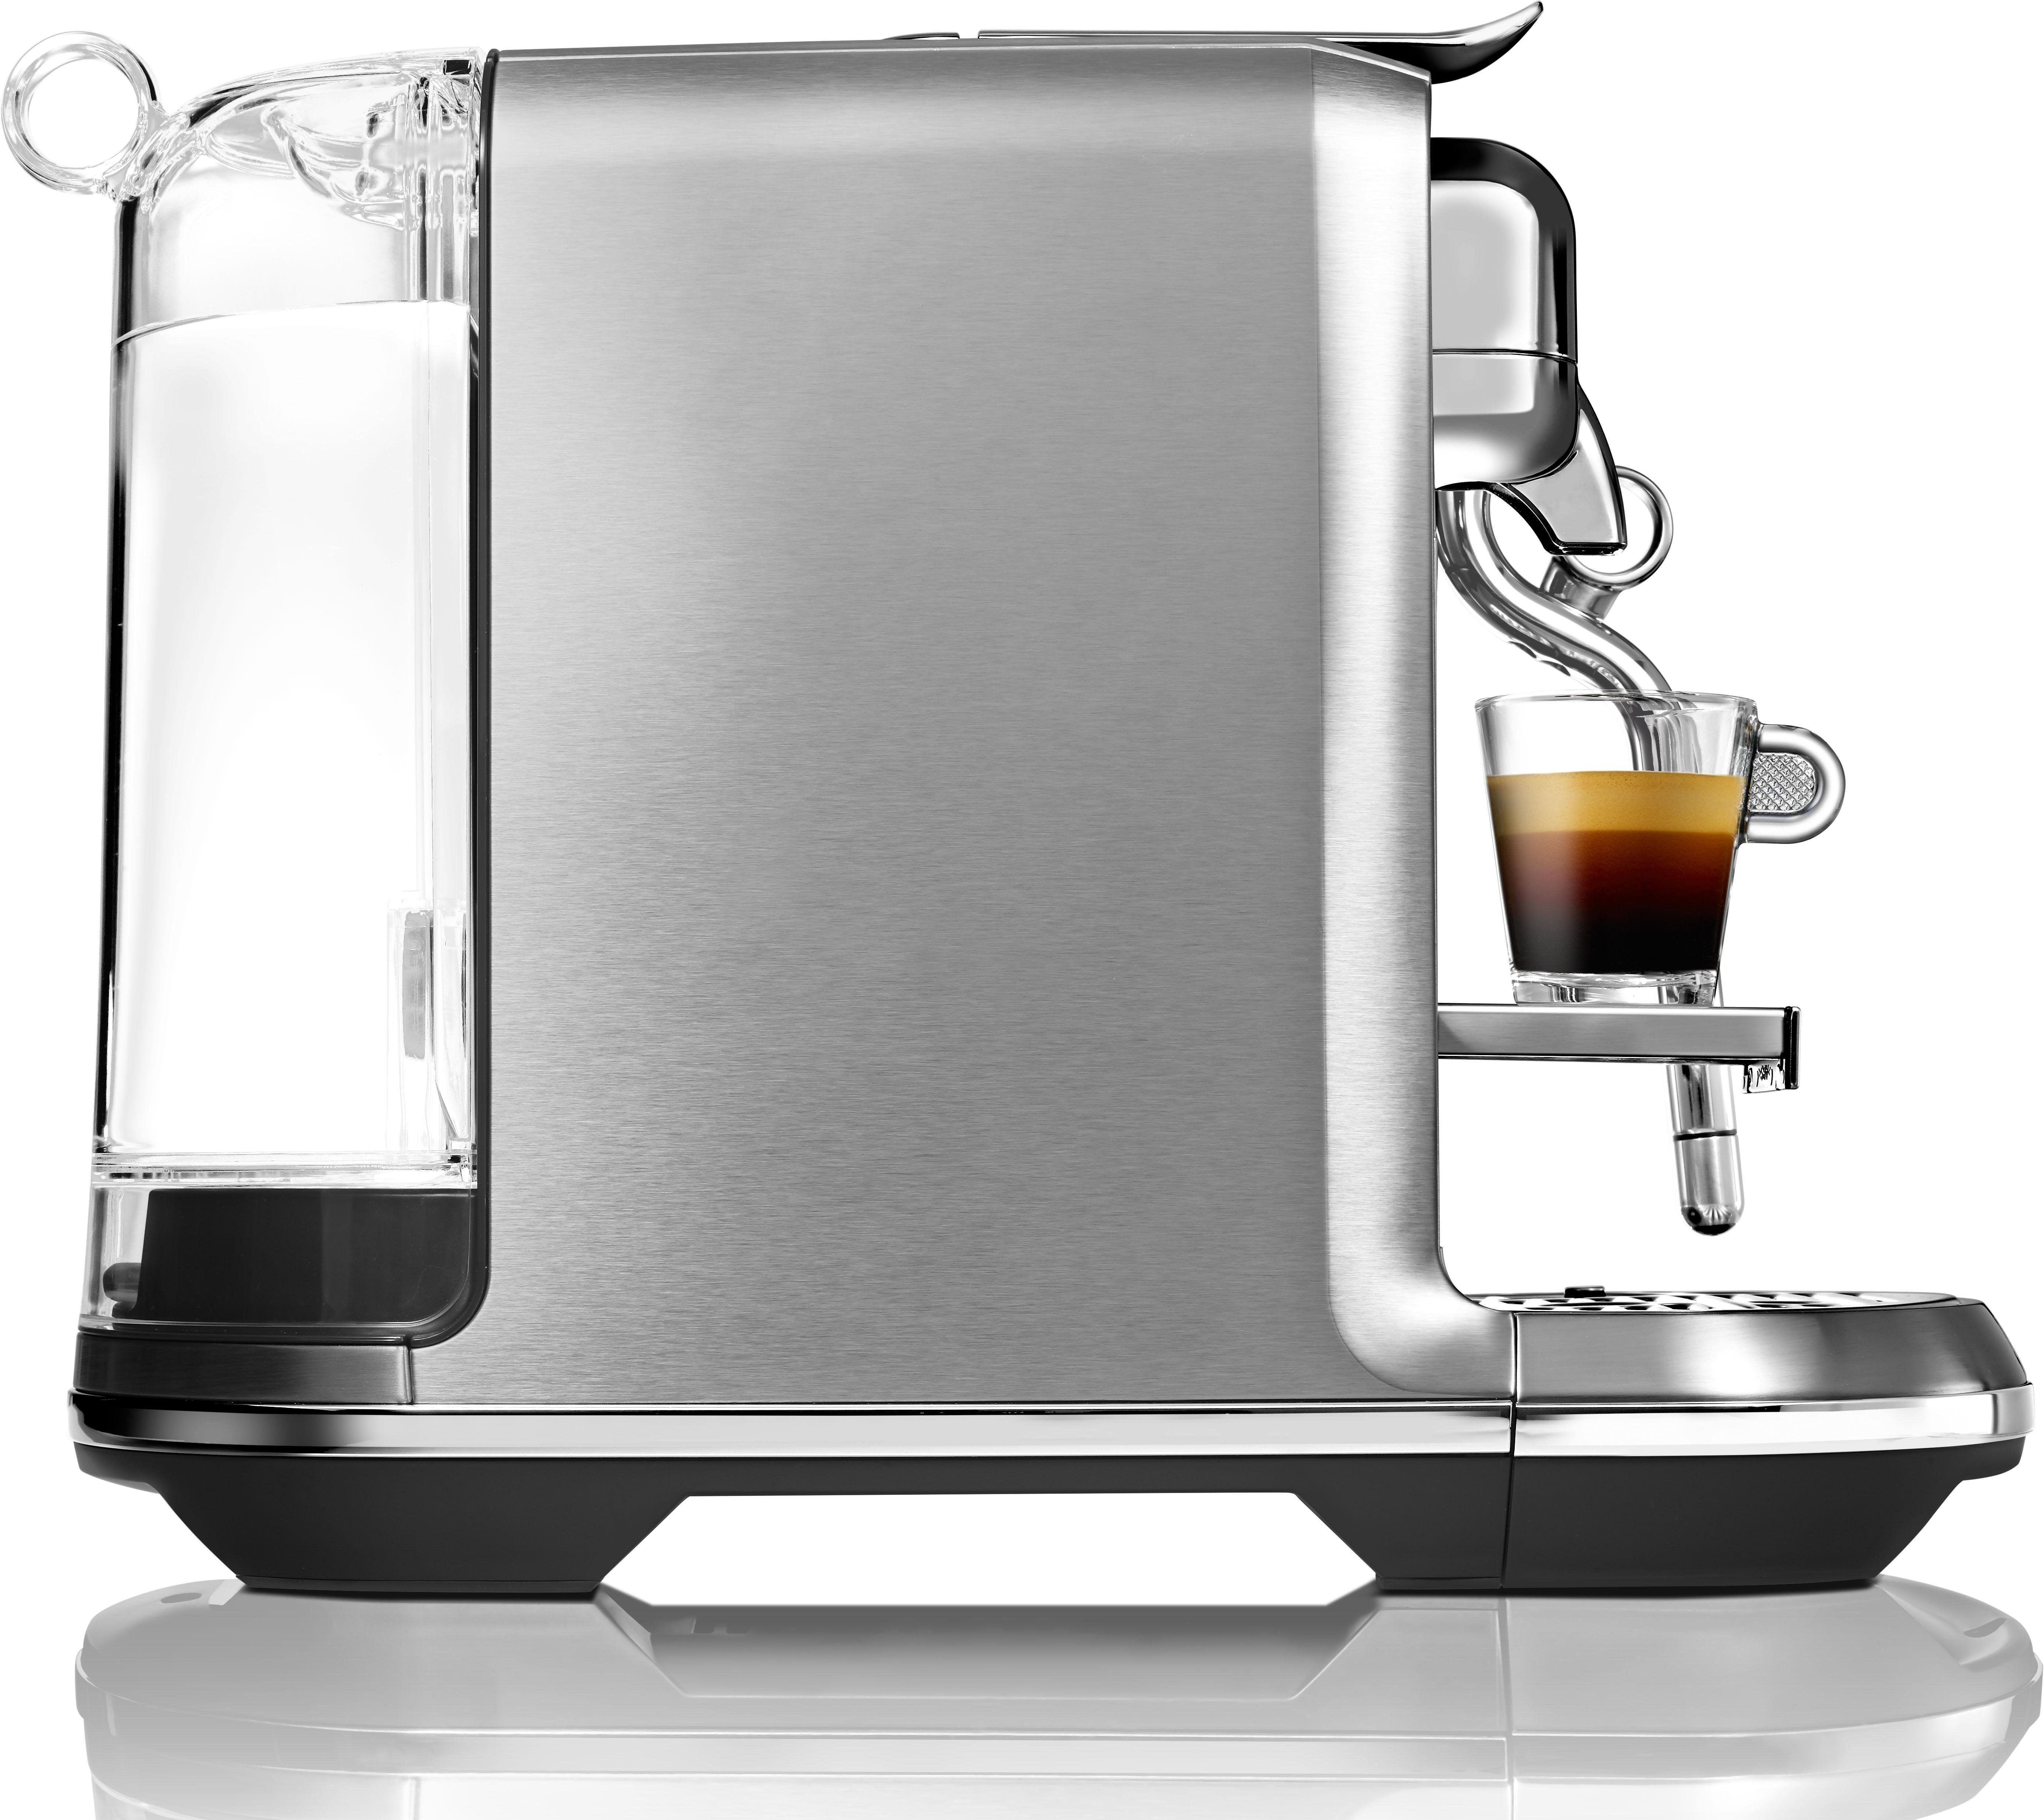 Nespresso Kapselmaschine inkl. 14 SNE800 Creatista mit Willkommenspaket Kapseln Edelstahl-Milchkanne, mit Plus